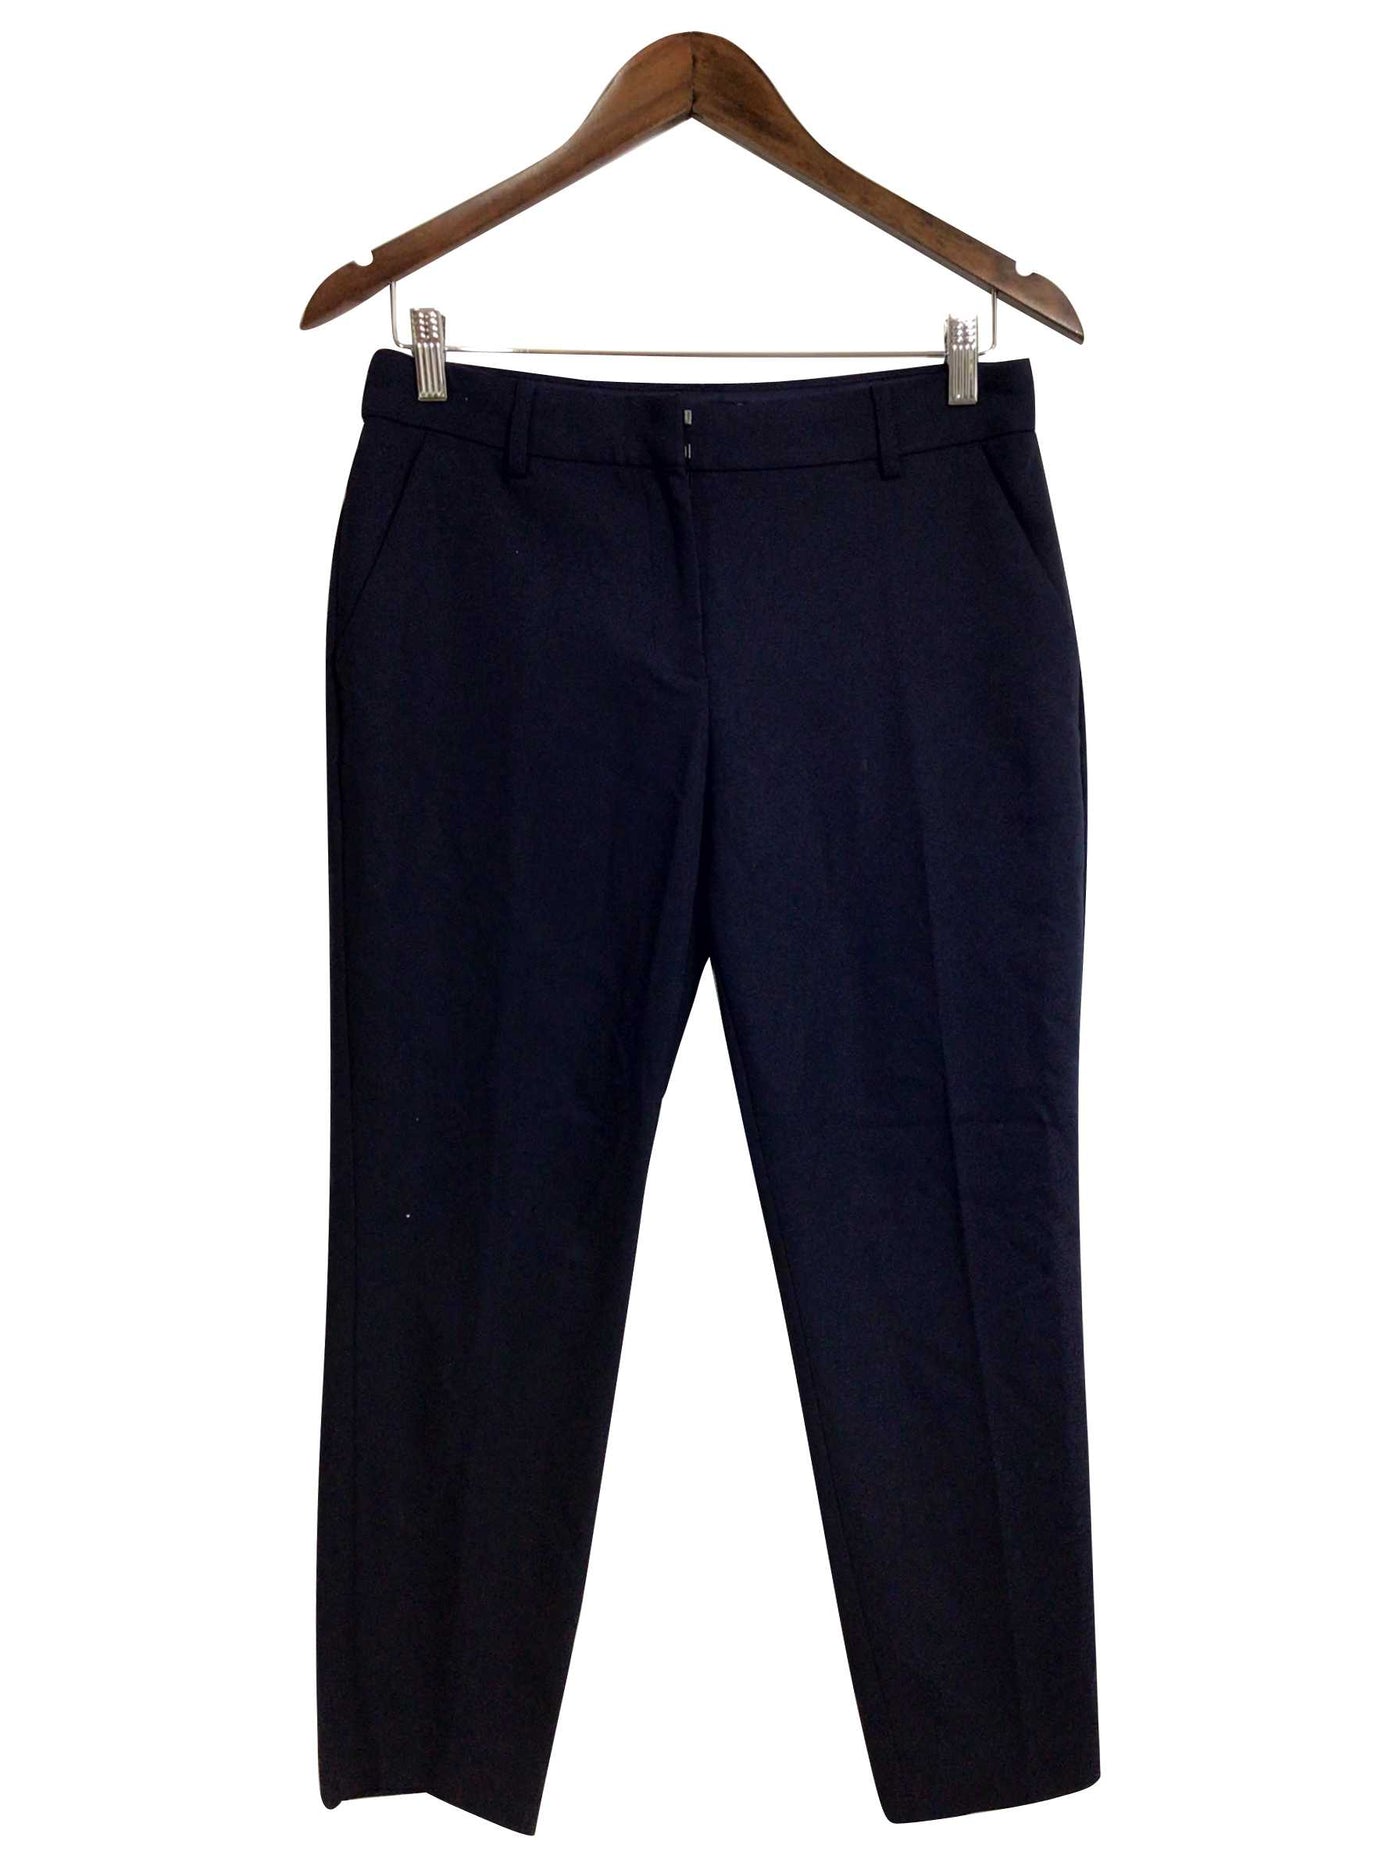 EXPRESS Regular fit Pant in Blue - Size 8 | 11.69 $ KOOP